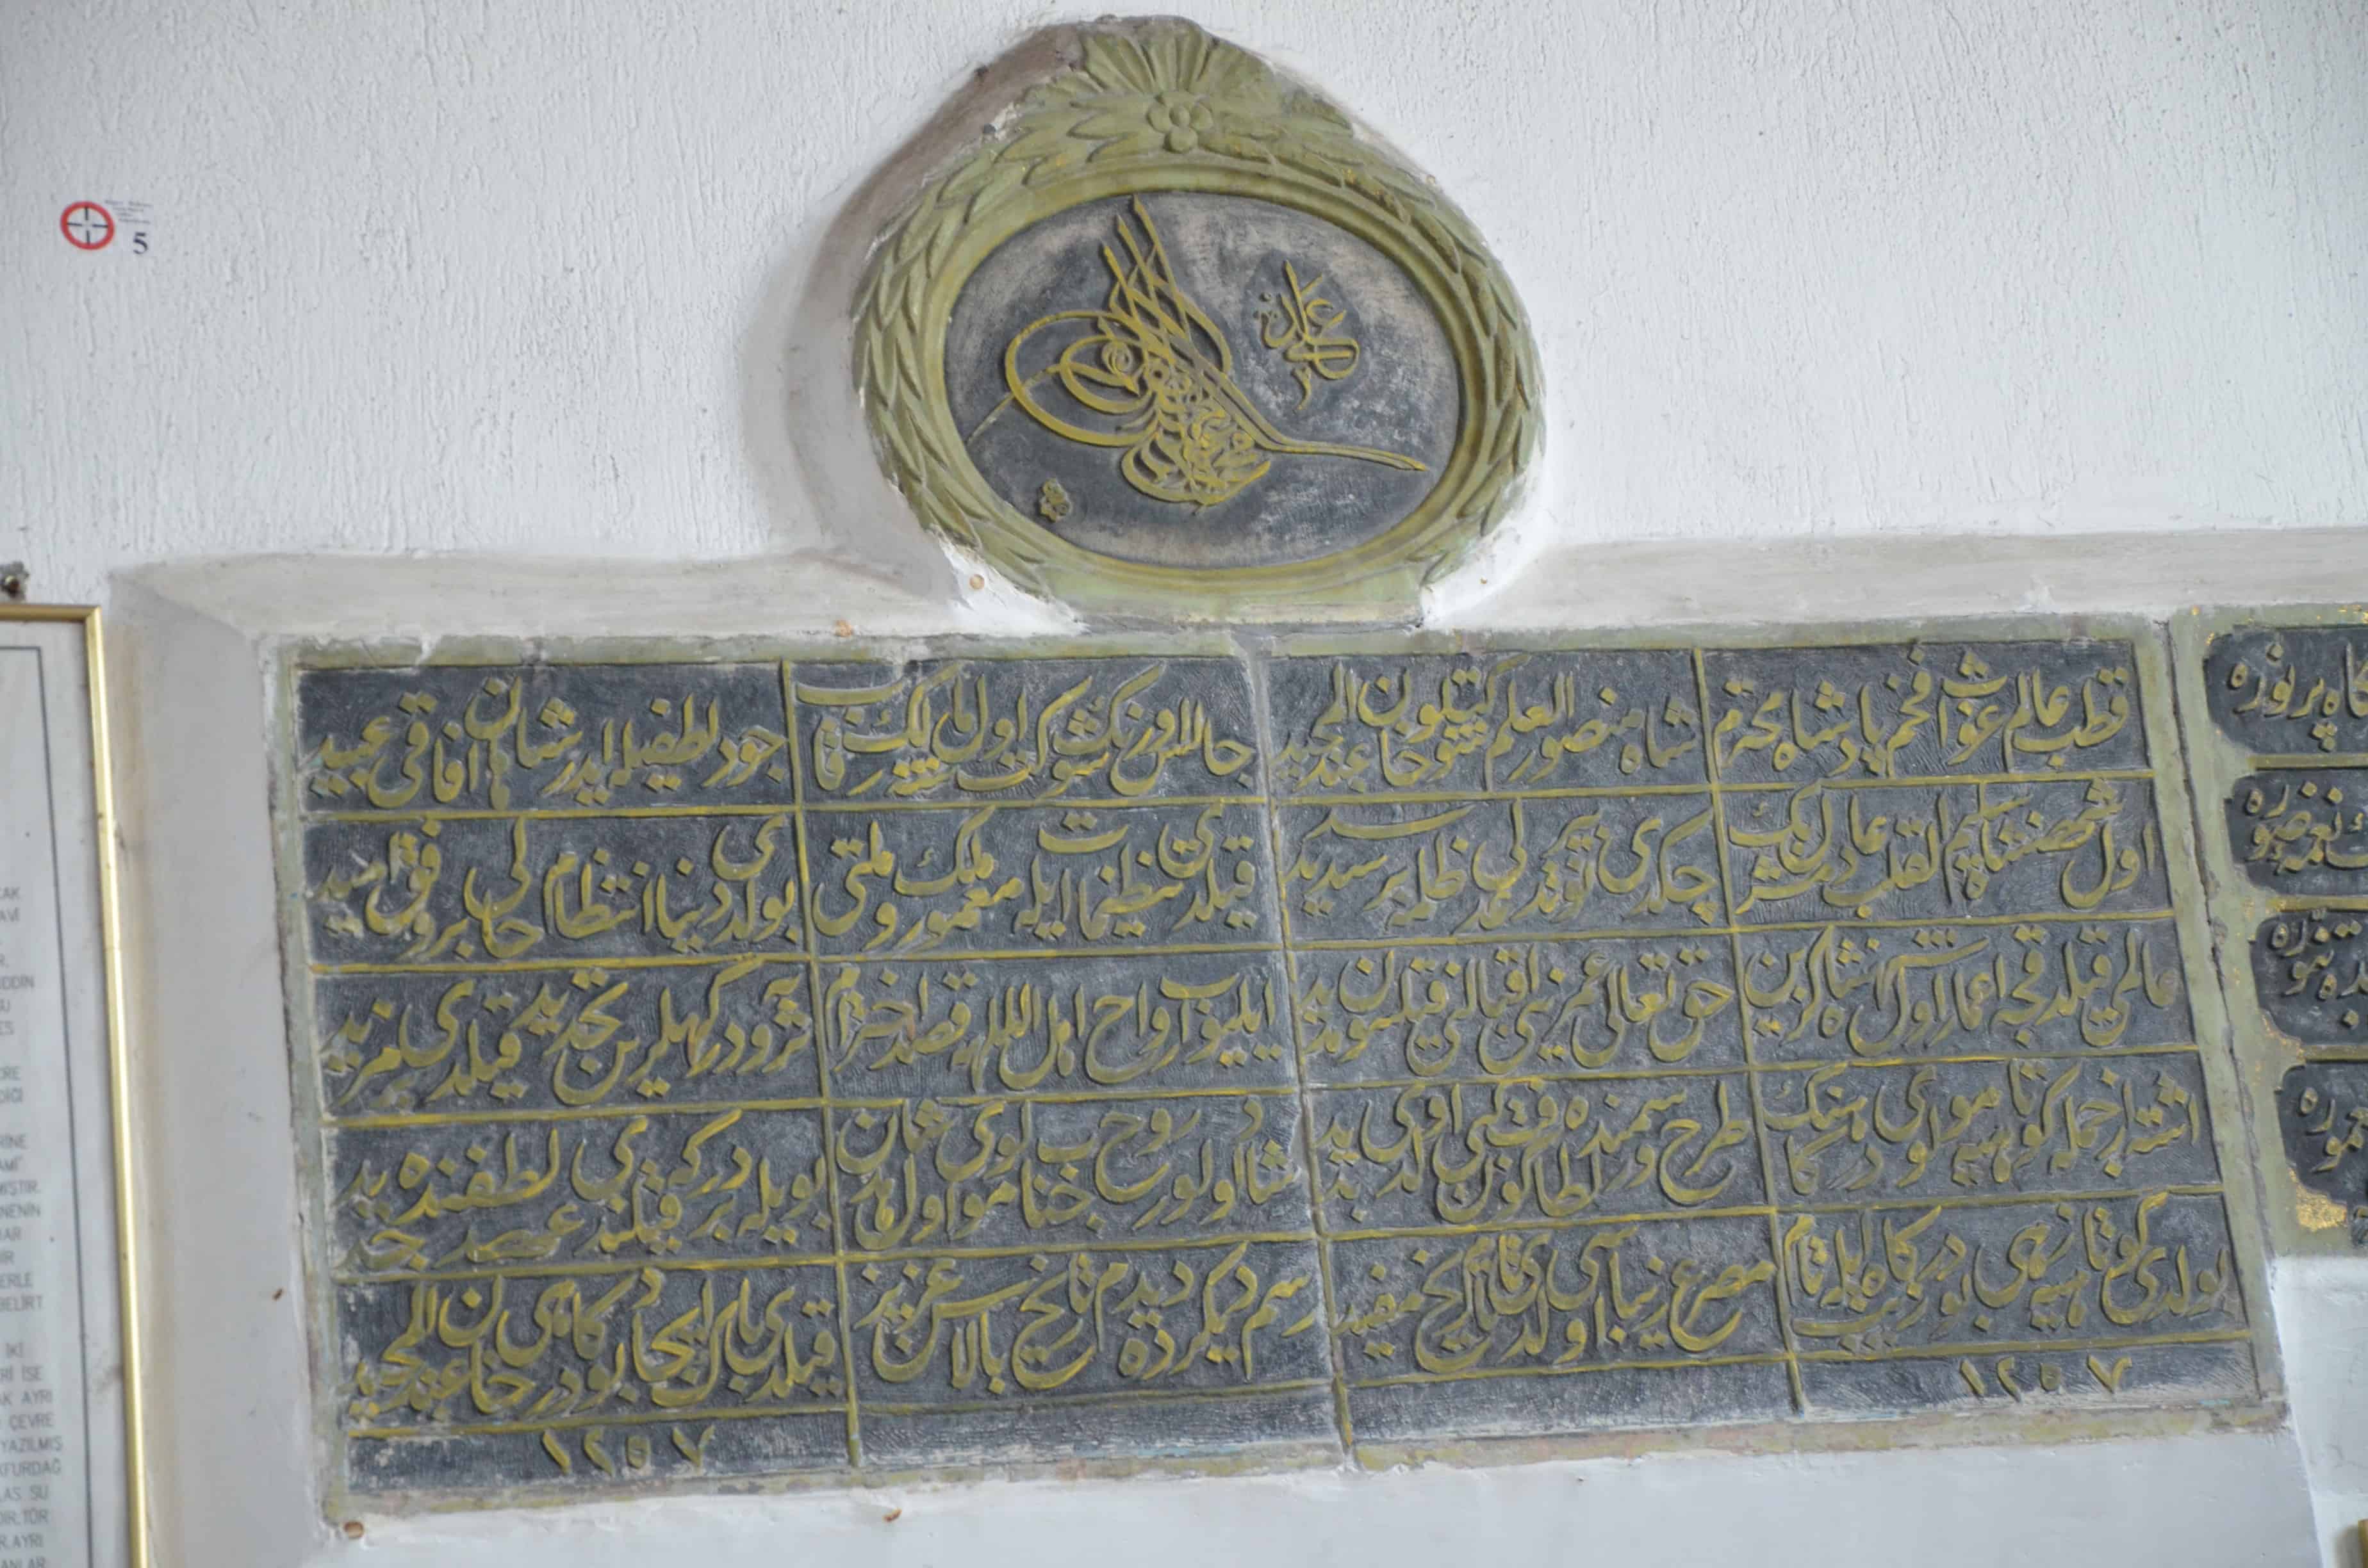 Ottoman inscription in the Dönenler Mosque in Kütahya, Turkey